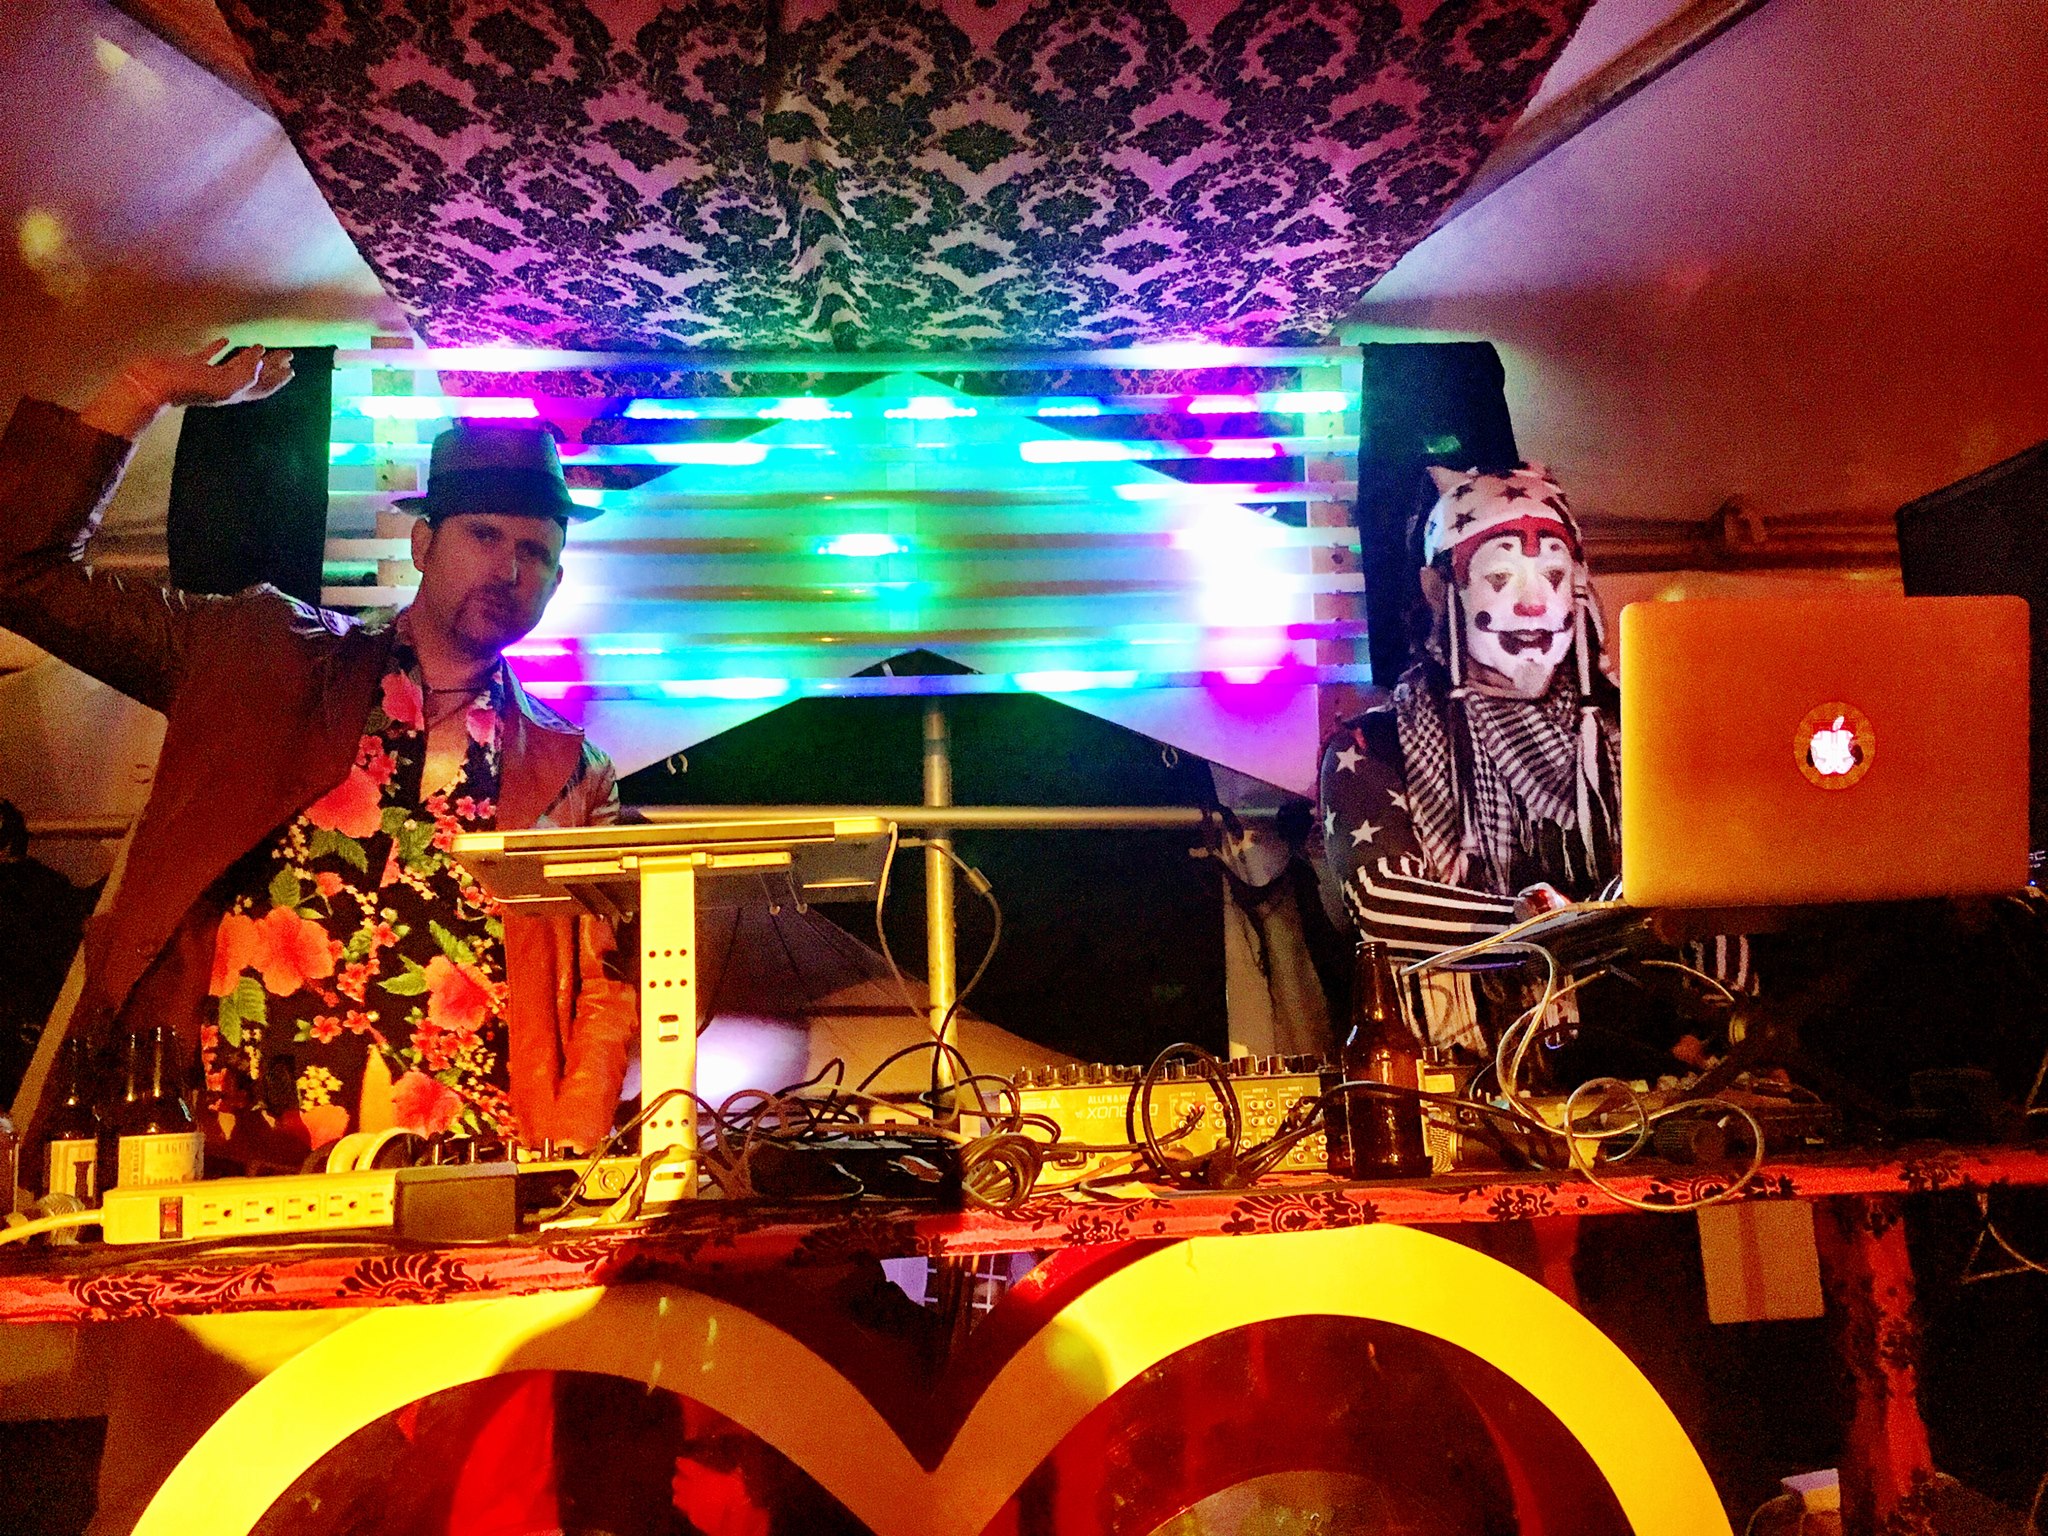 The Klown & Delachaux DJing Trapeze Worldwide - Amori's Casino, Lighting In A Bottle 2016